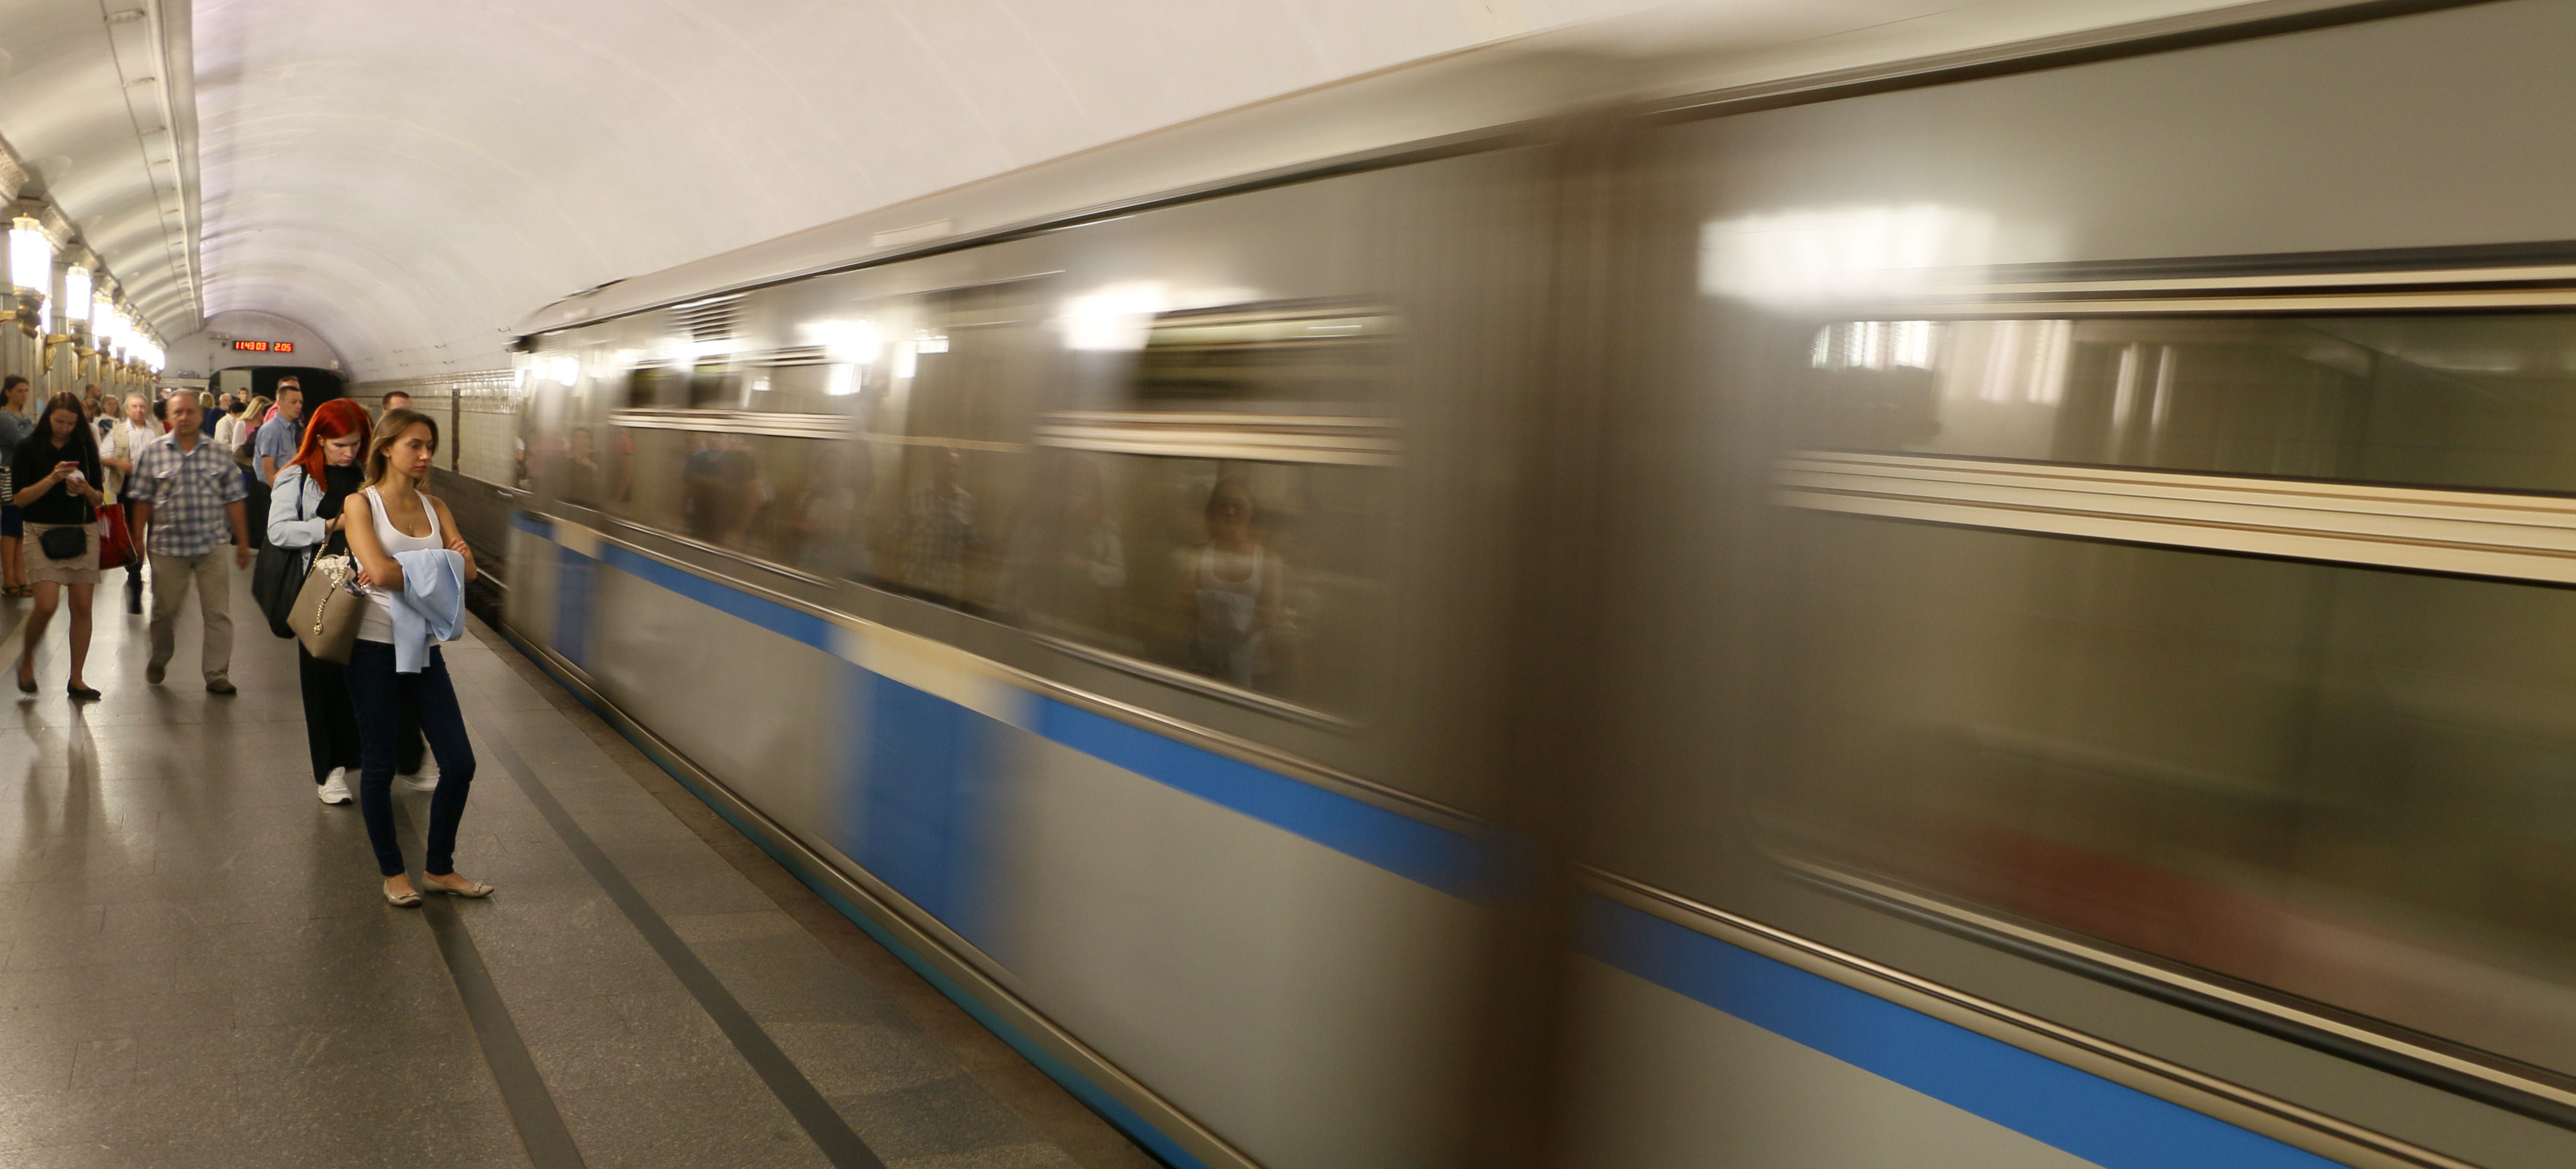 10 εκατομμύρια επιβάτες την ημέρα και ρεκόρ Guiness για το μετρό της Μόσχας